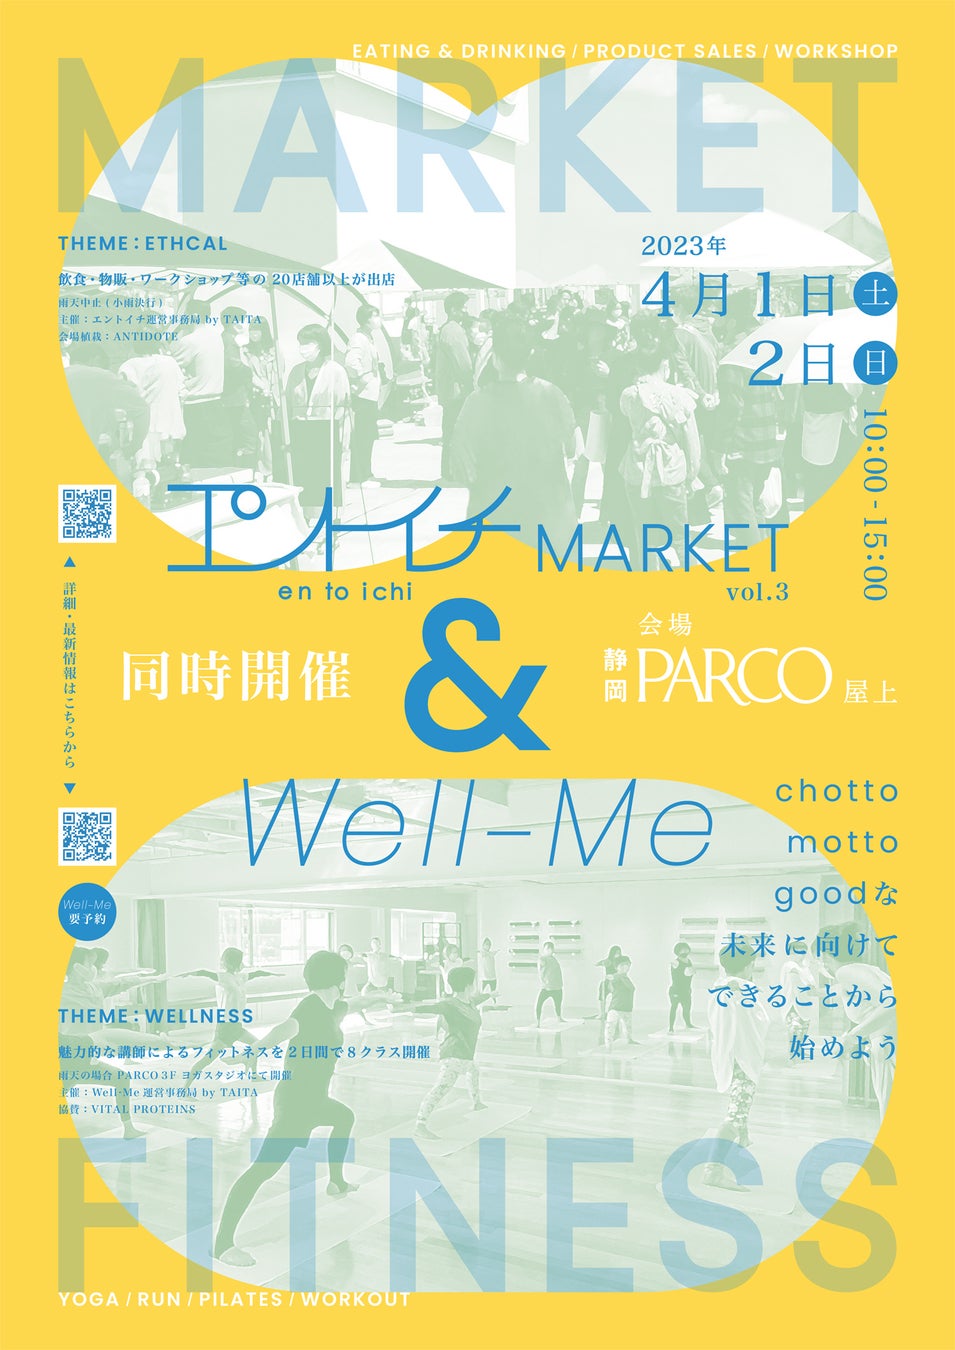 【 2023年 4月1日 • 2日 】 静岡パルコ屋上にて「 エントイチMARKET 」と「 Well-Me 」が初のコラボイベントを開催。